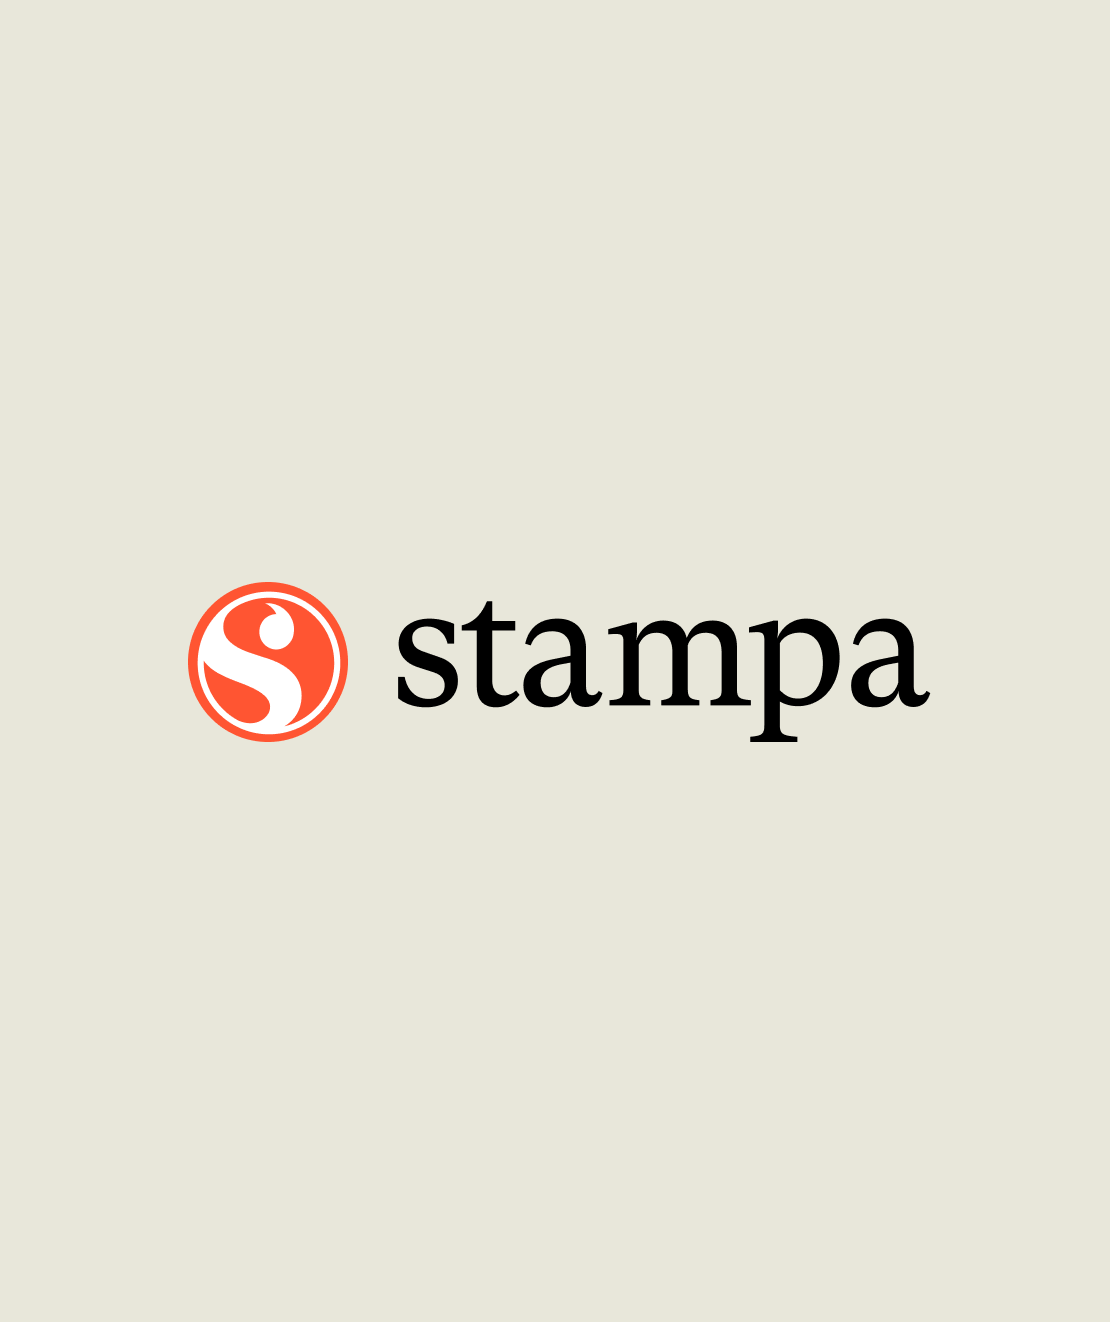 Stampa logo design2x